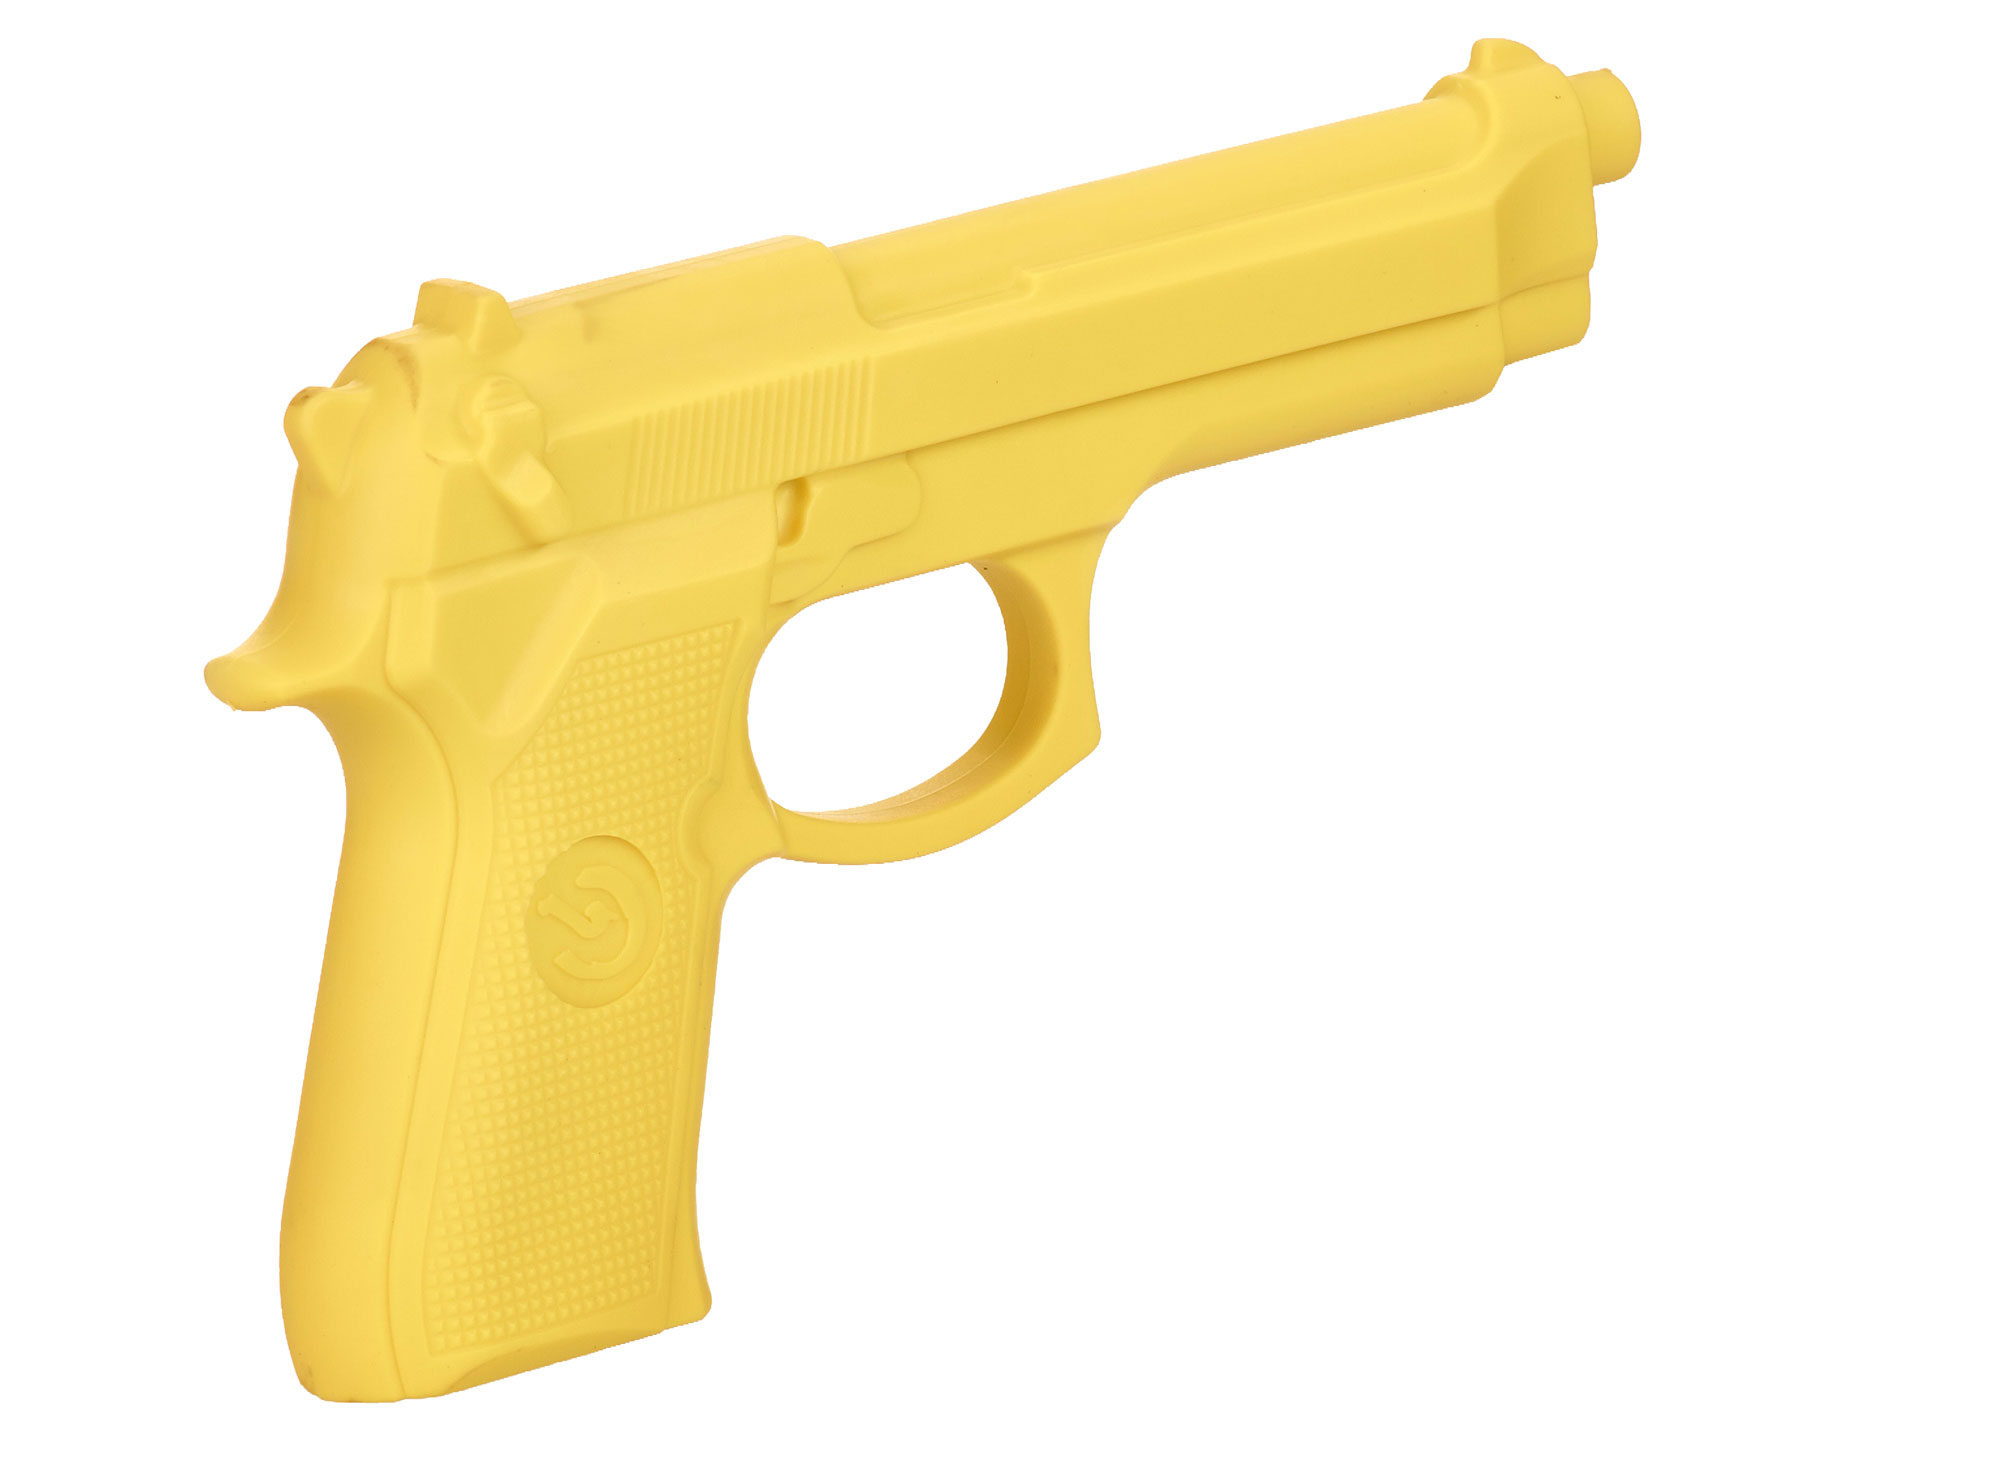 Rubber Gun yellow